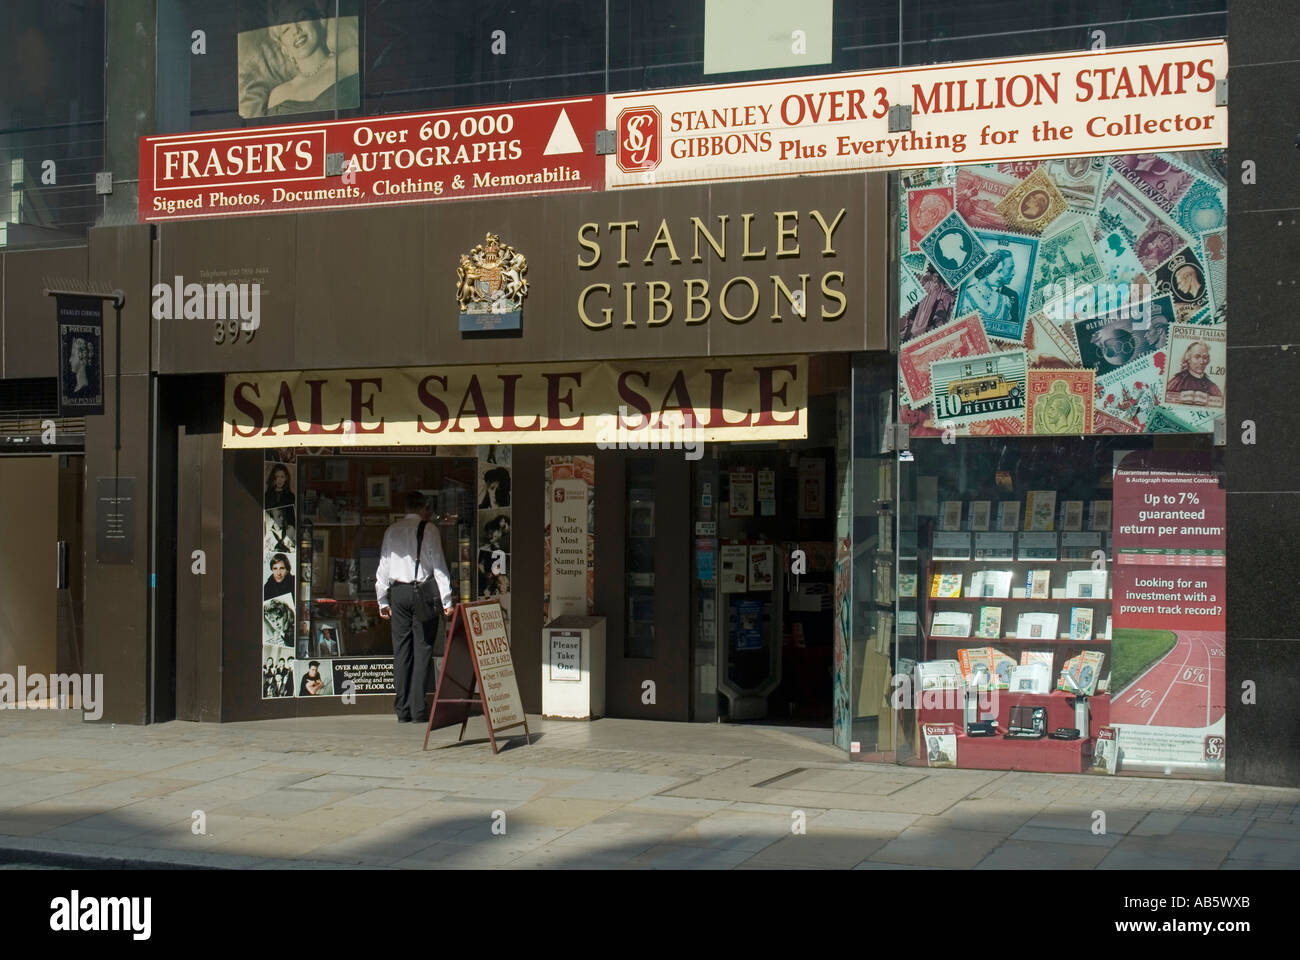 Le magasin de timbres Strand Stanley Gibbons avec un homme qui regarde l'exposition de la fenêtre avant du magasin et le Royal Adjur avec philatélie illustrations Londres Angleterre Royaume-Uni Banque D'Images